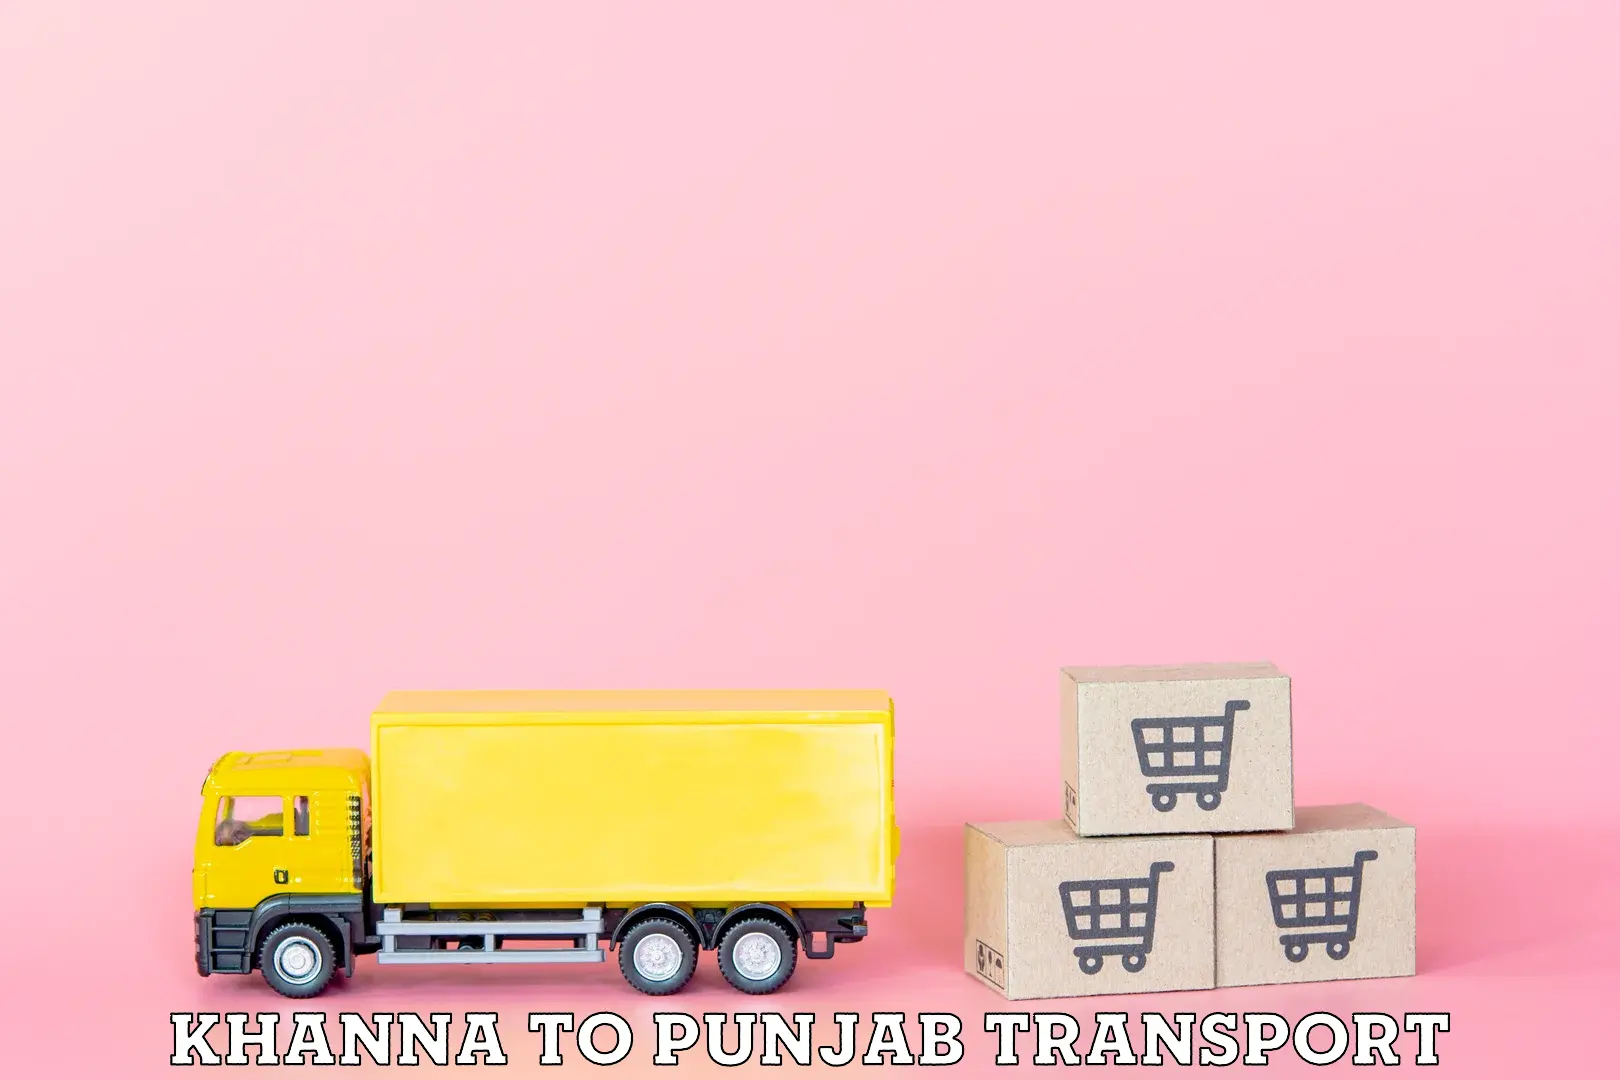 Nearest transport service Khanna to Amritsar